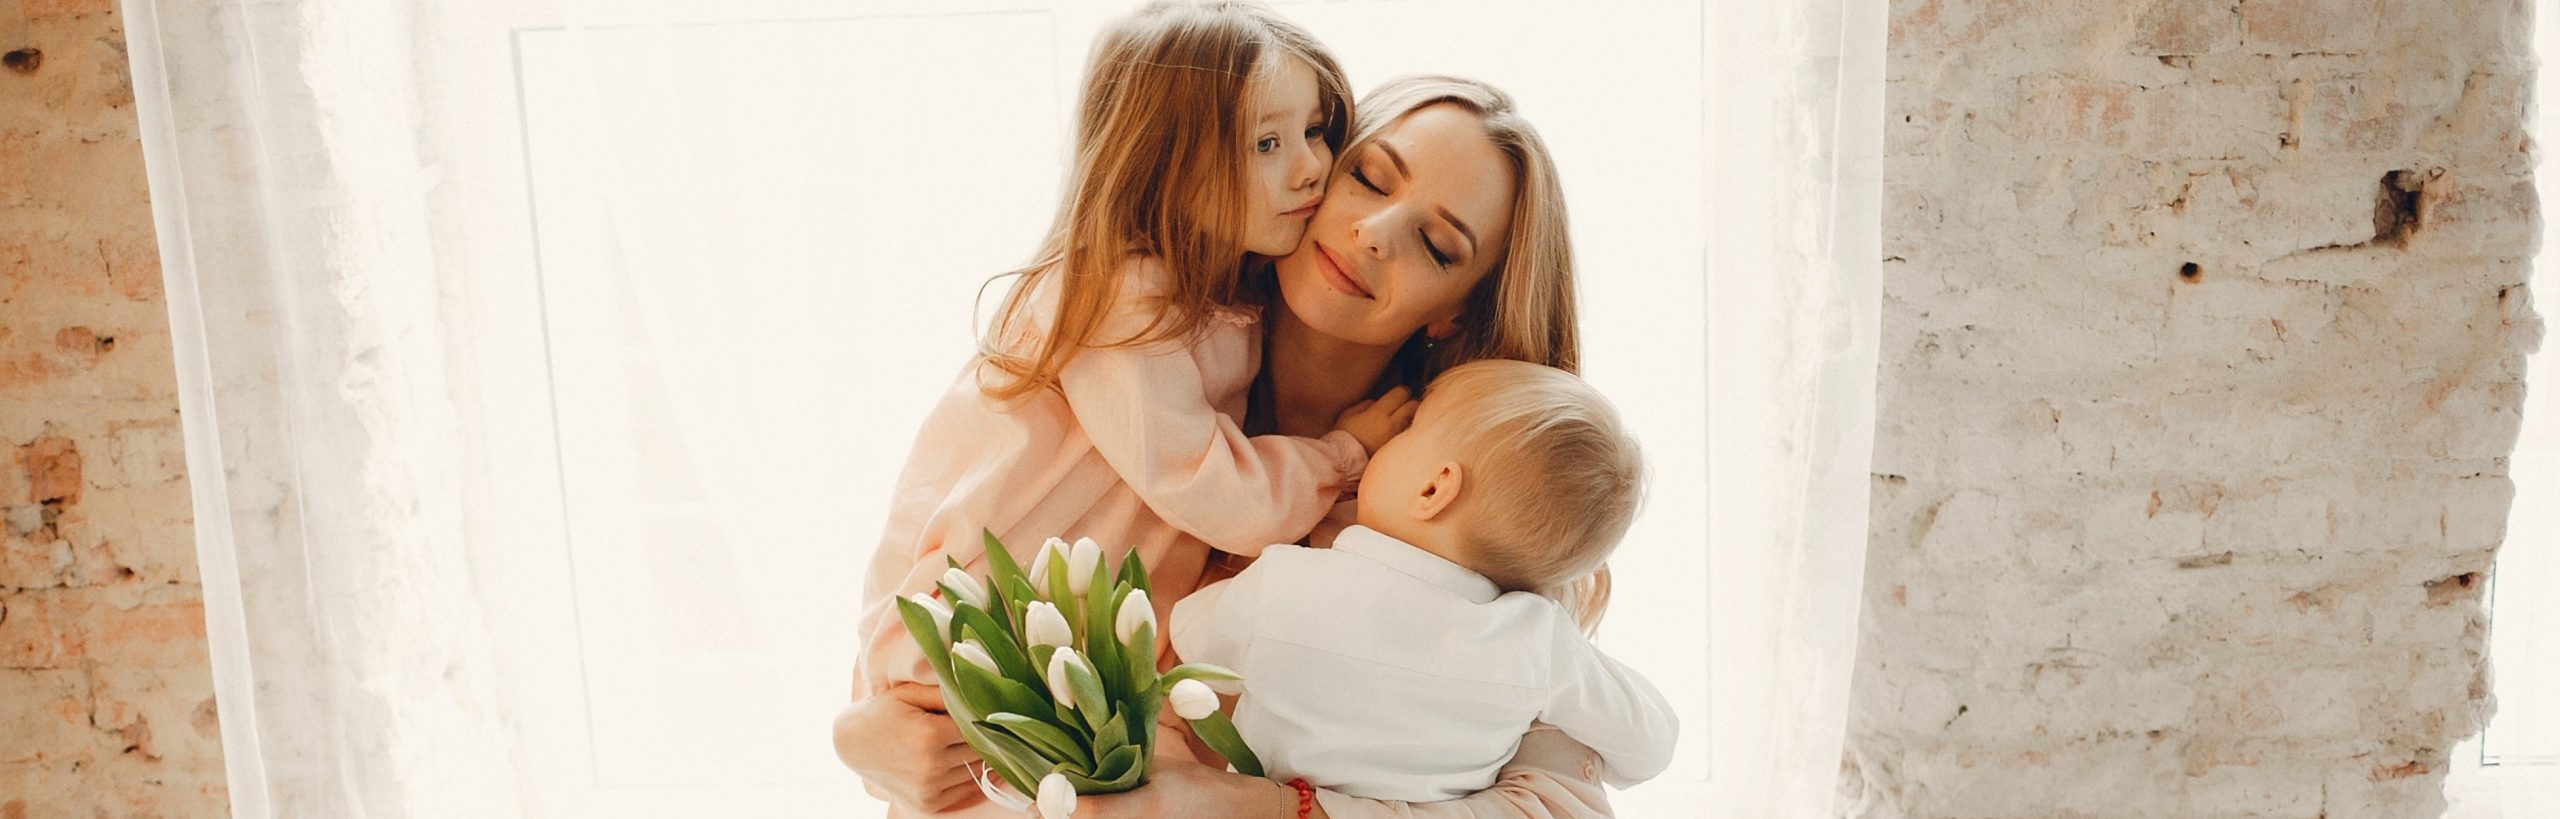 Estudo prevê novos públicos-alvo para o Dia das Mães